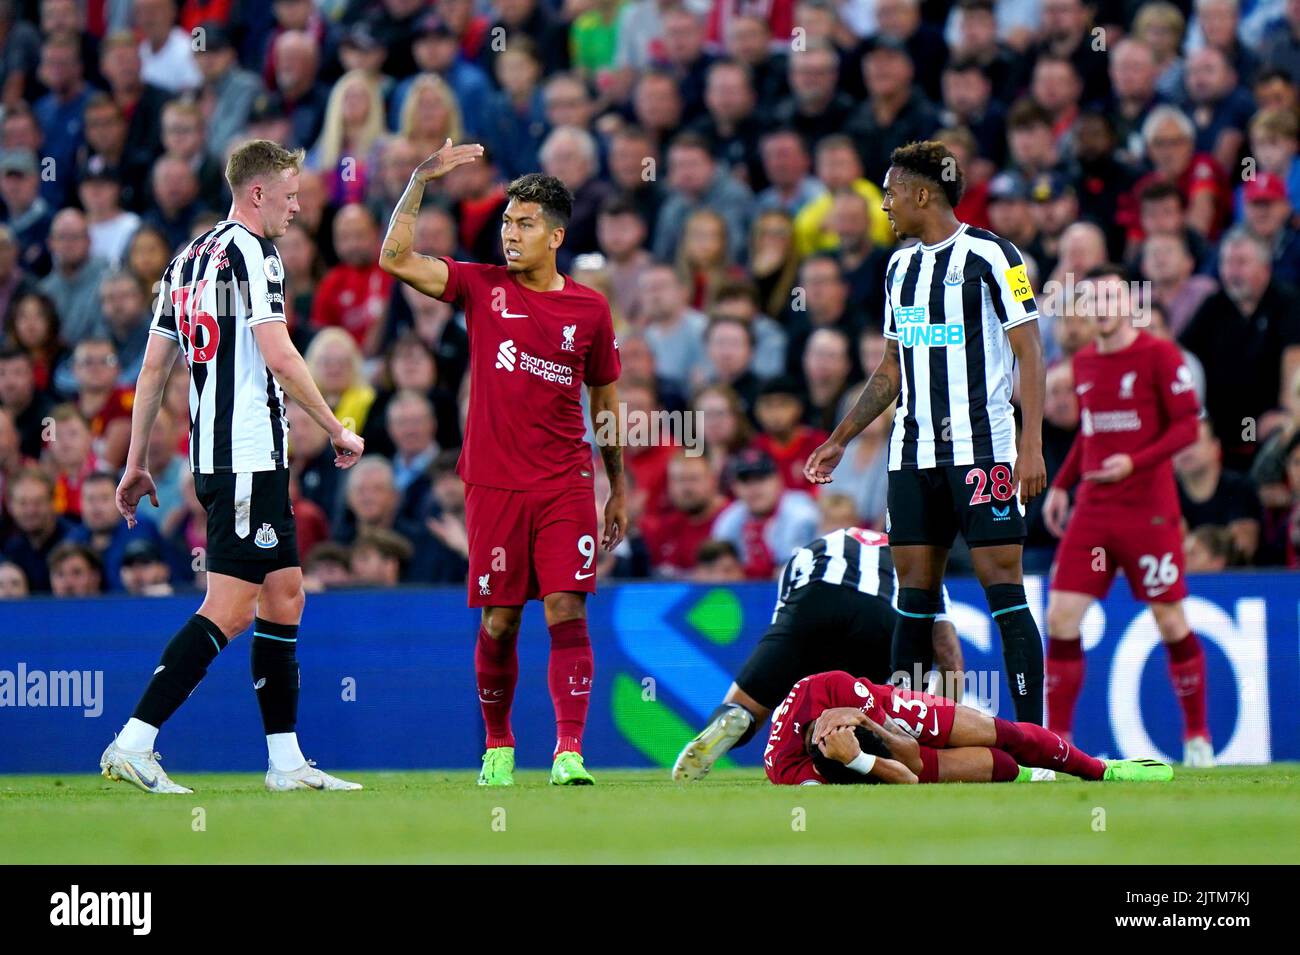 Luis Díaz del Liverpool yace herido en el campo el partido de la Premier League en Anfield, Liverpool. Fecha de la foto: Miércoles 31 de agosto 2022 Fotografía de stock -